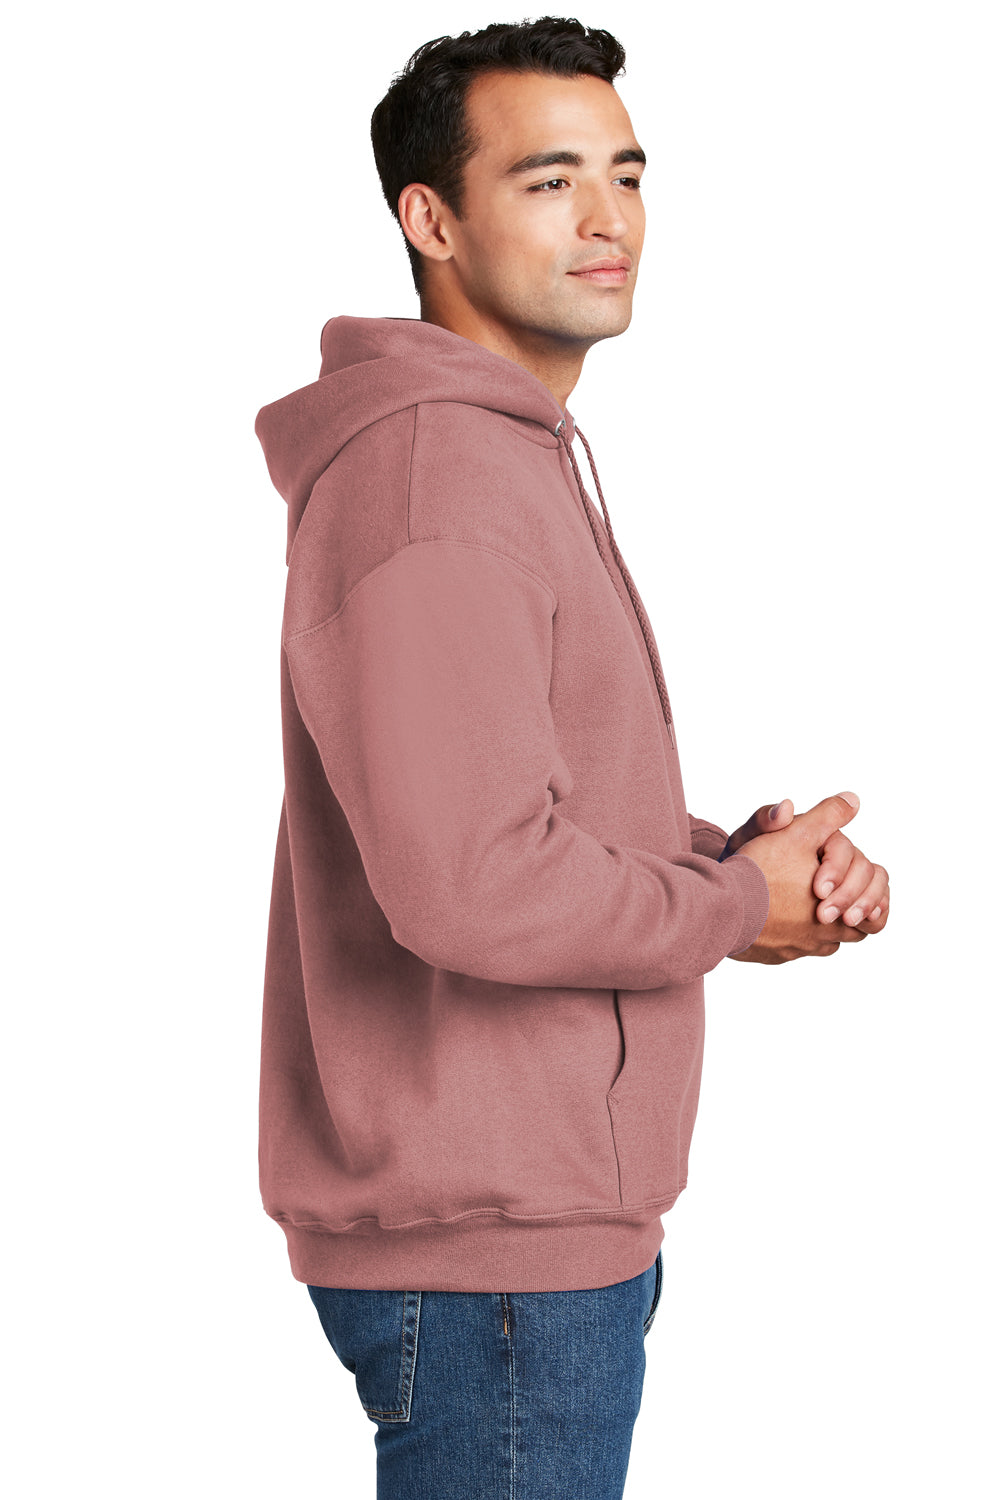 Hanes Mens Ultimate Cotton PrintPro XP Hooded Sweatshirt Hoodie Mauve Side